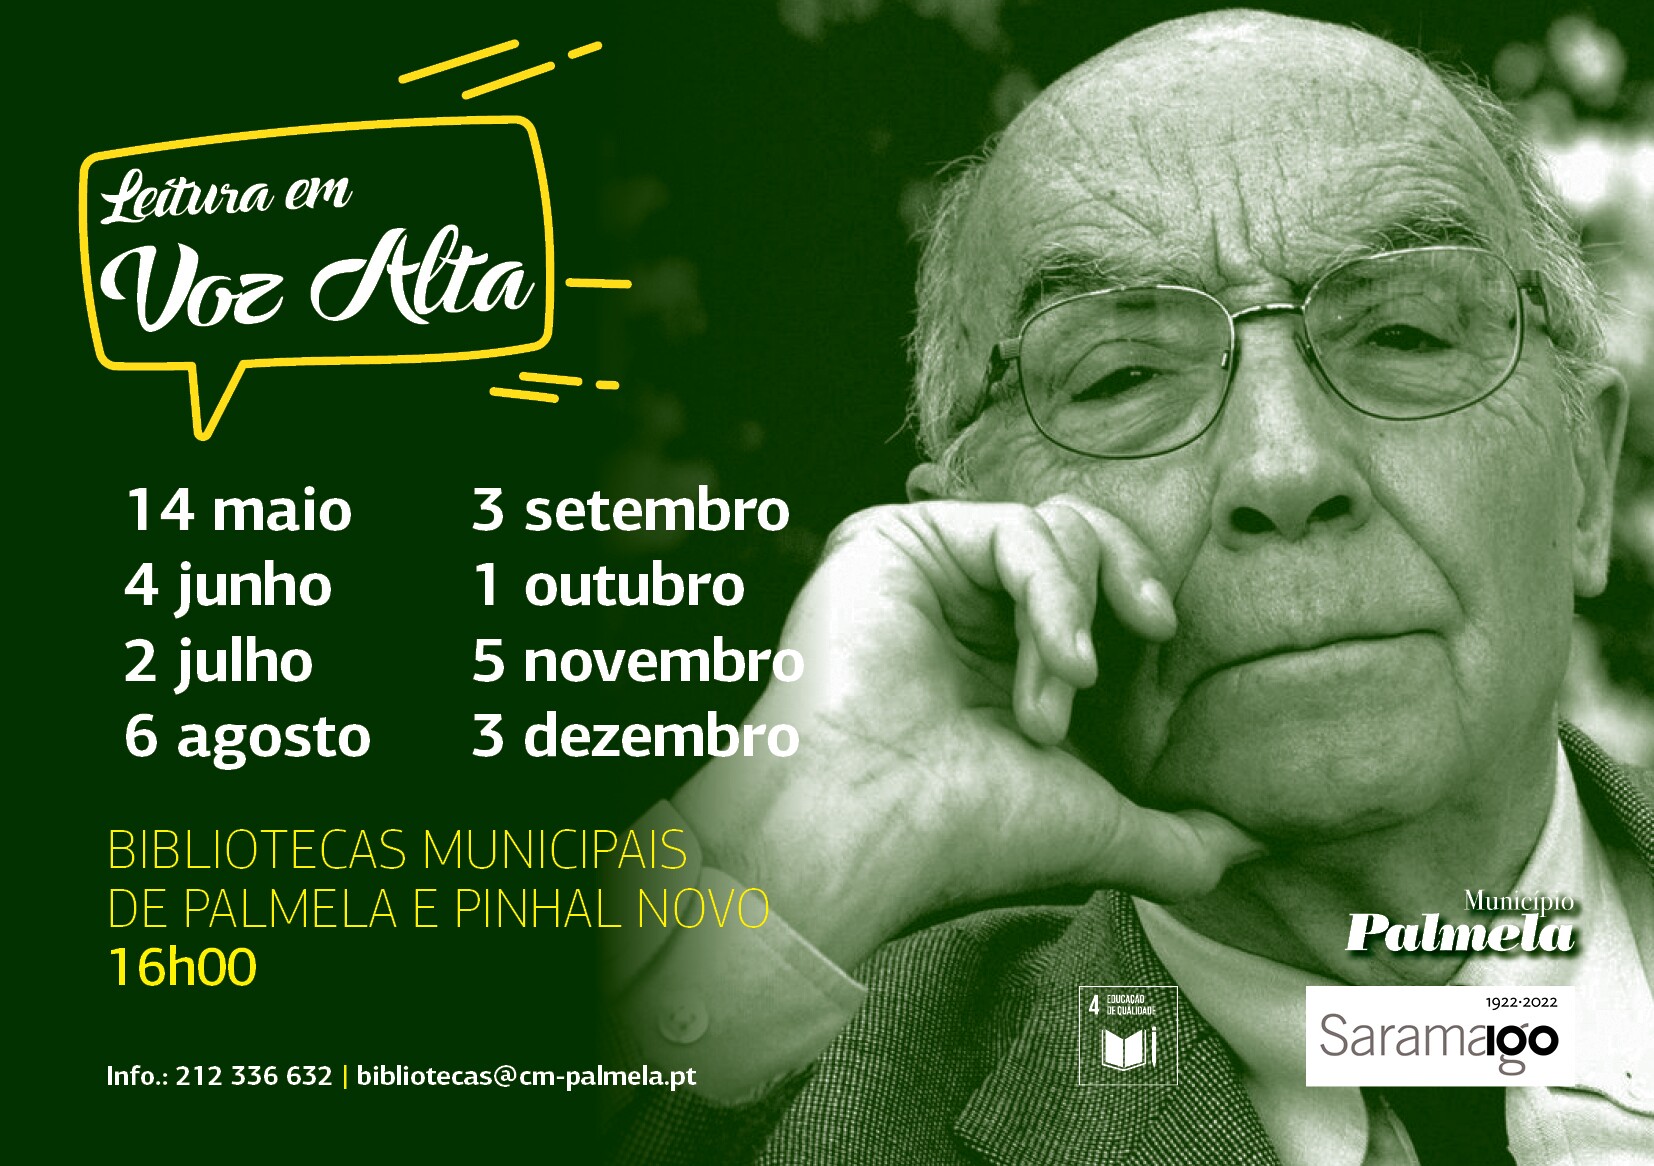 "LEITURA EM VOZ ALTA": Centenário do nascimento de José Saramago nas Bibliotecas Municipais